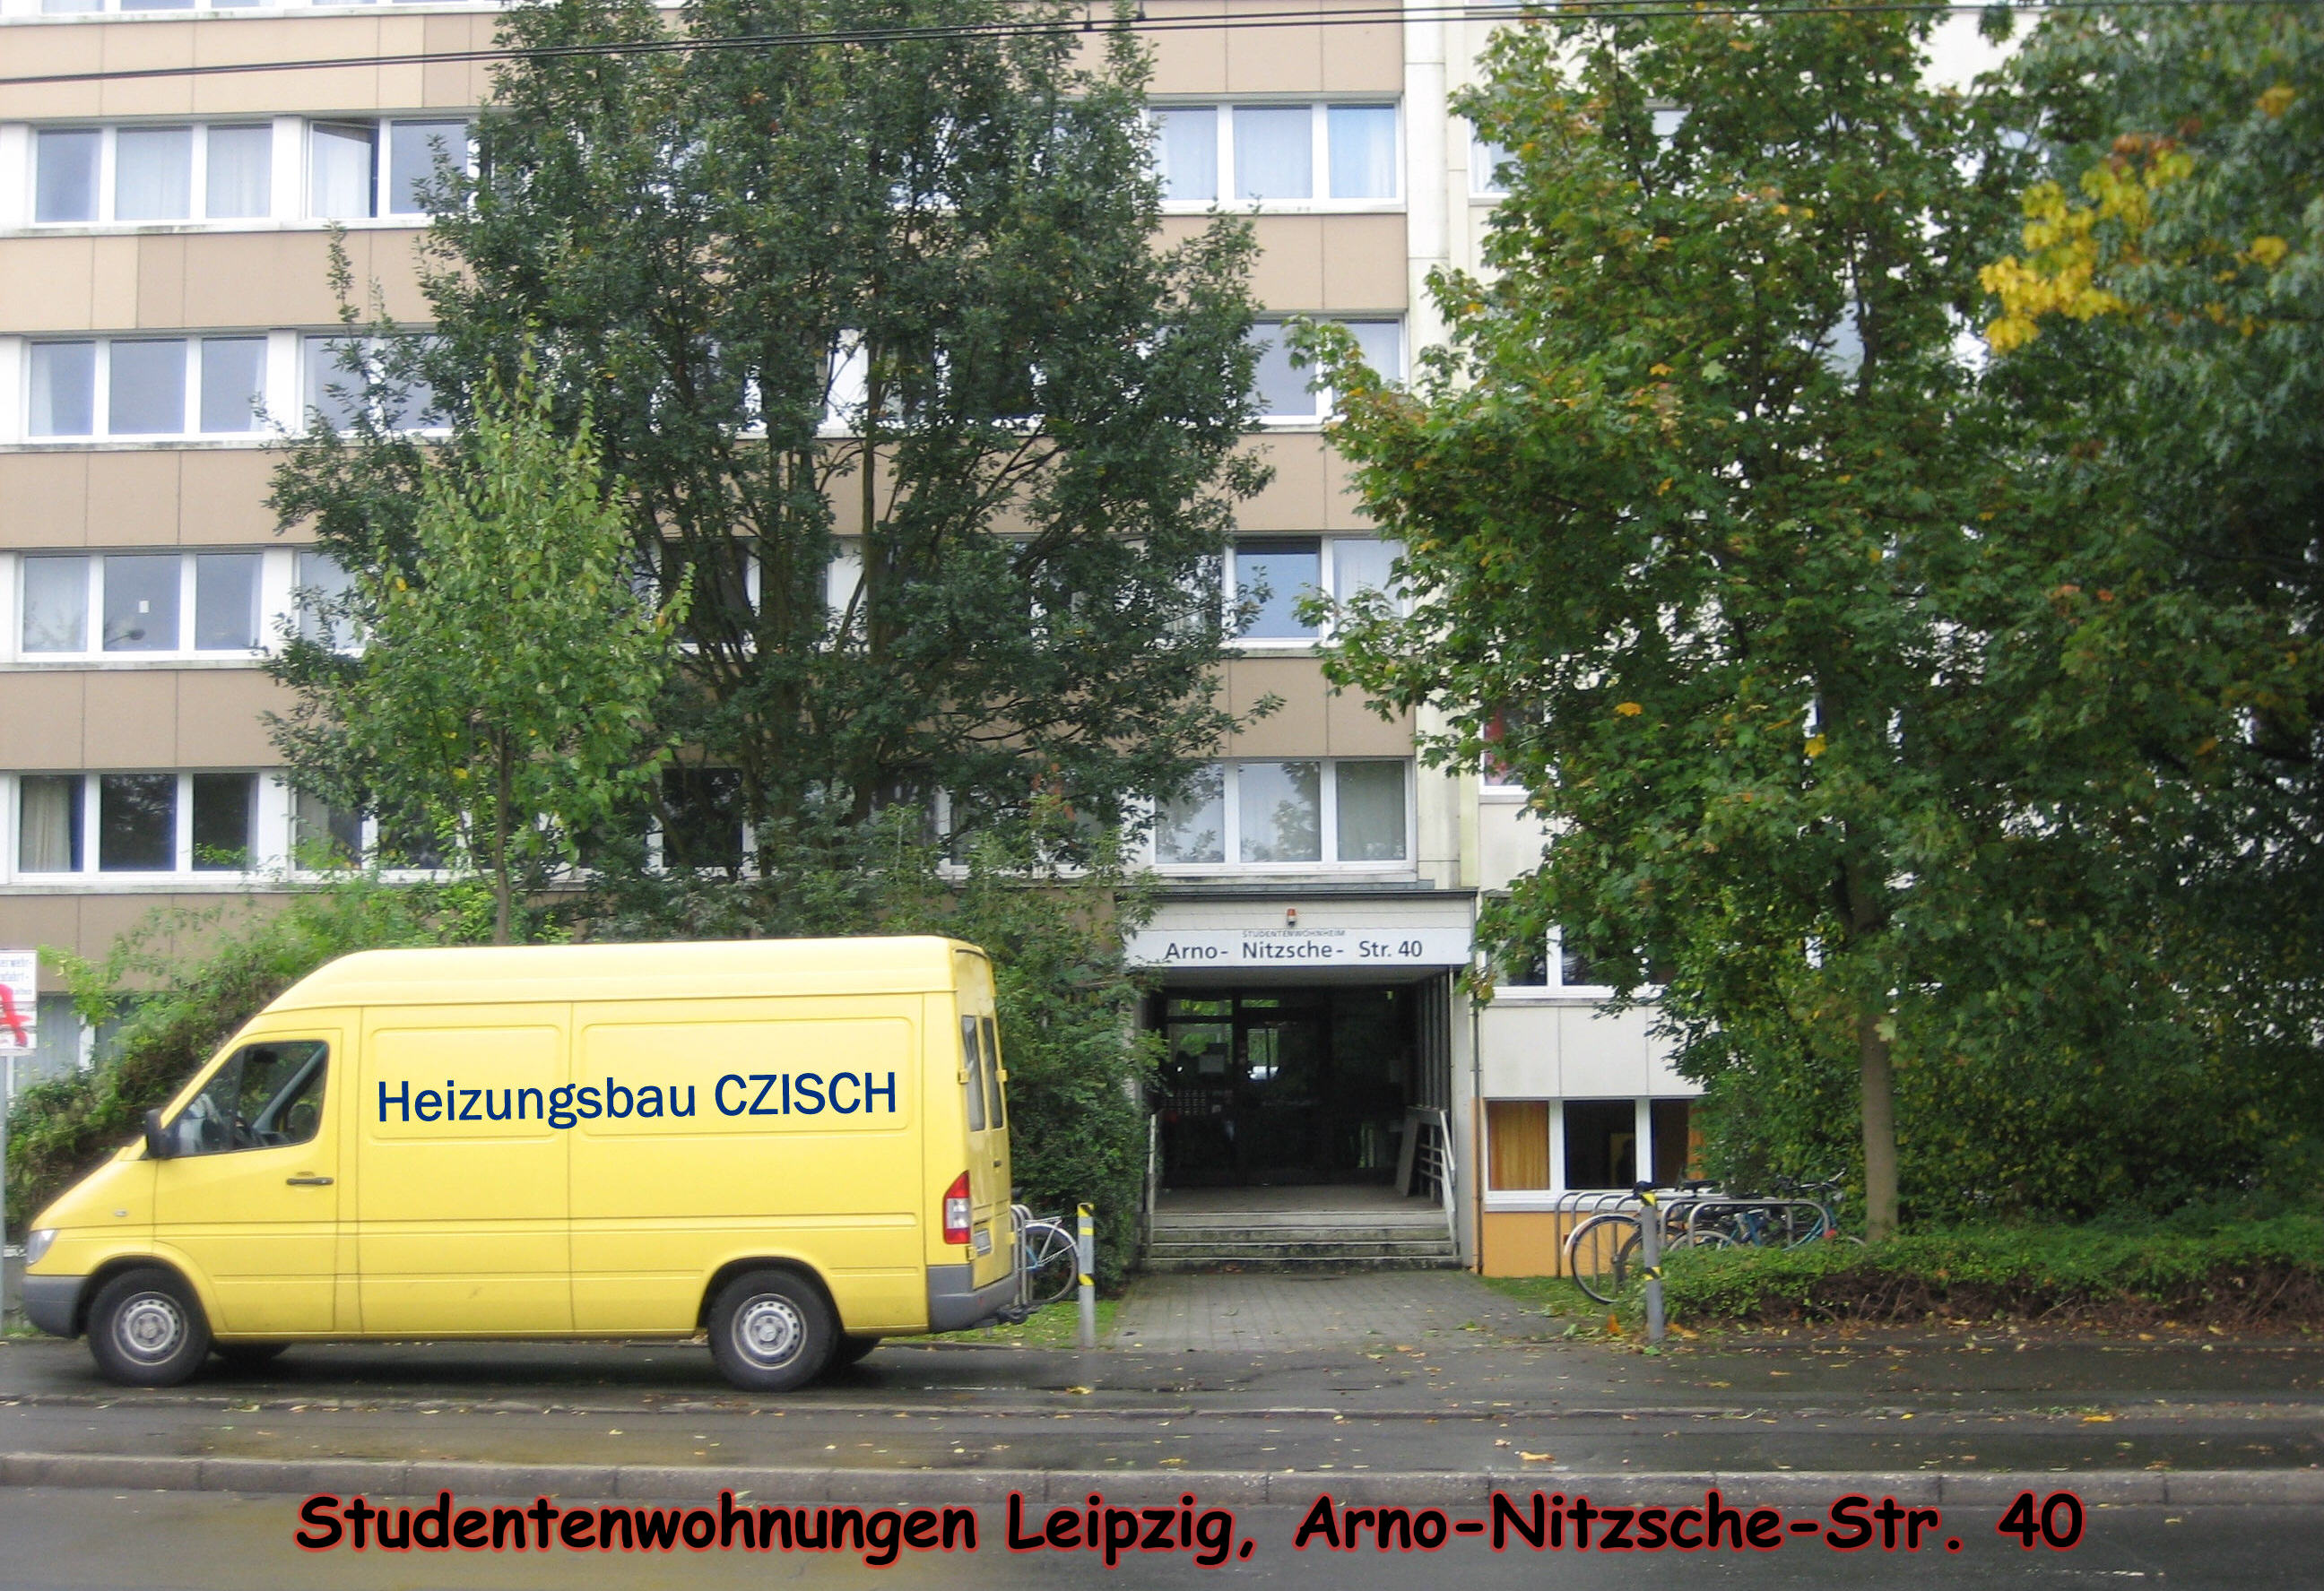 Heizungsbau Czisch, hier: Studentenwohnheim Leipzig